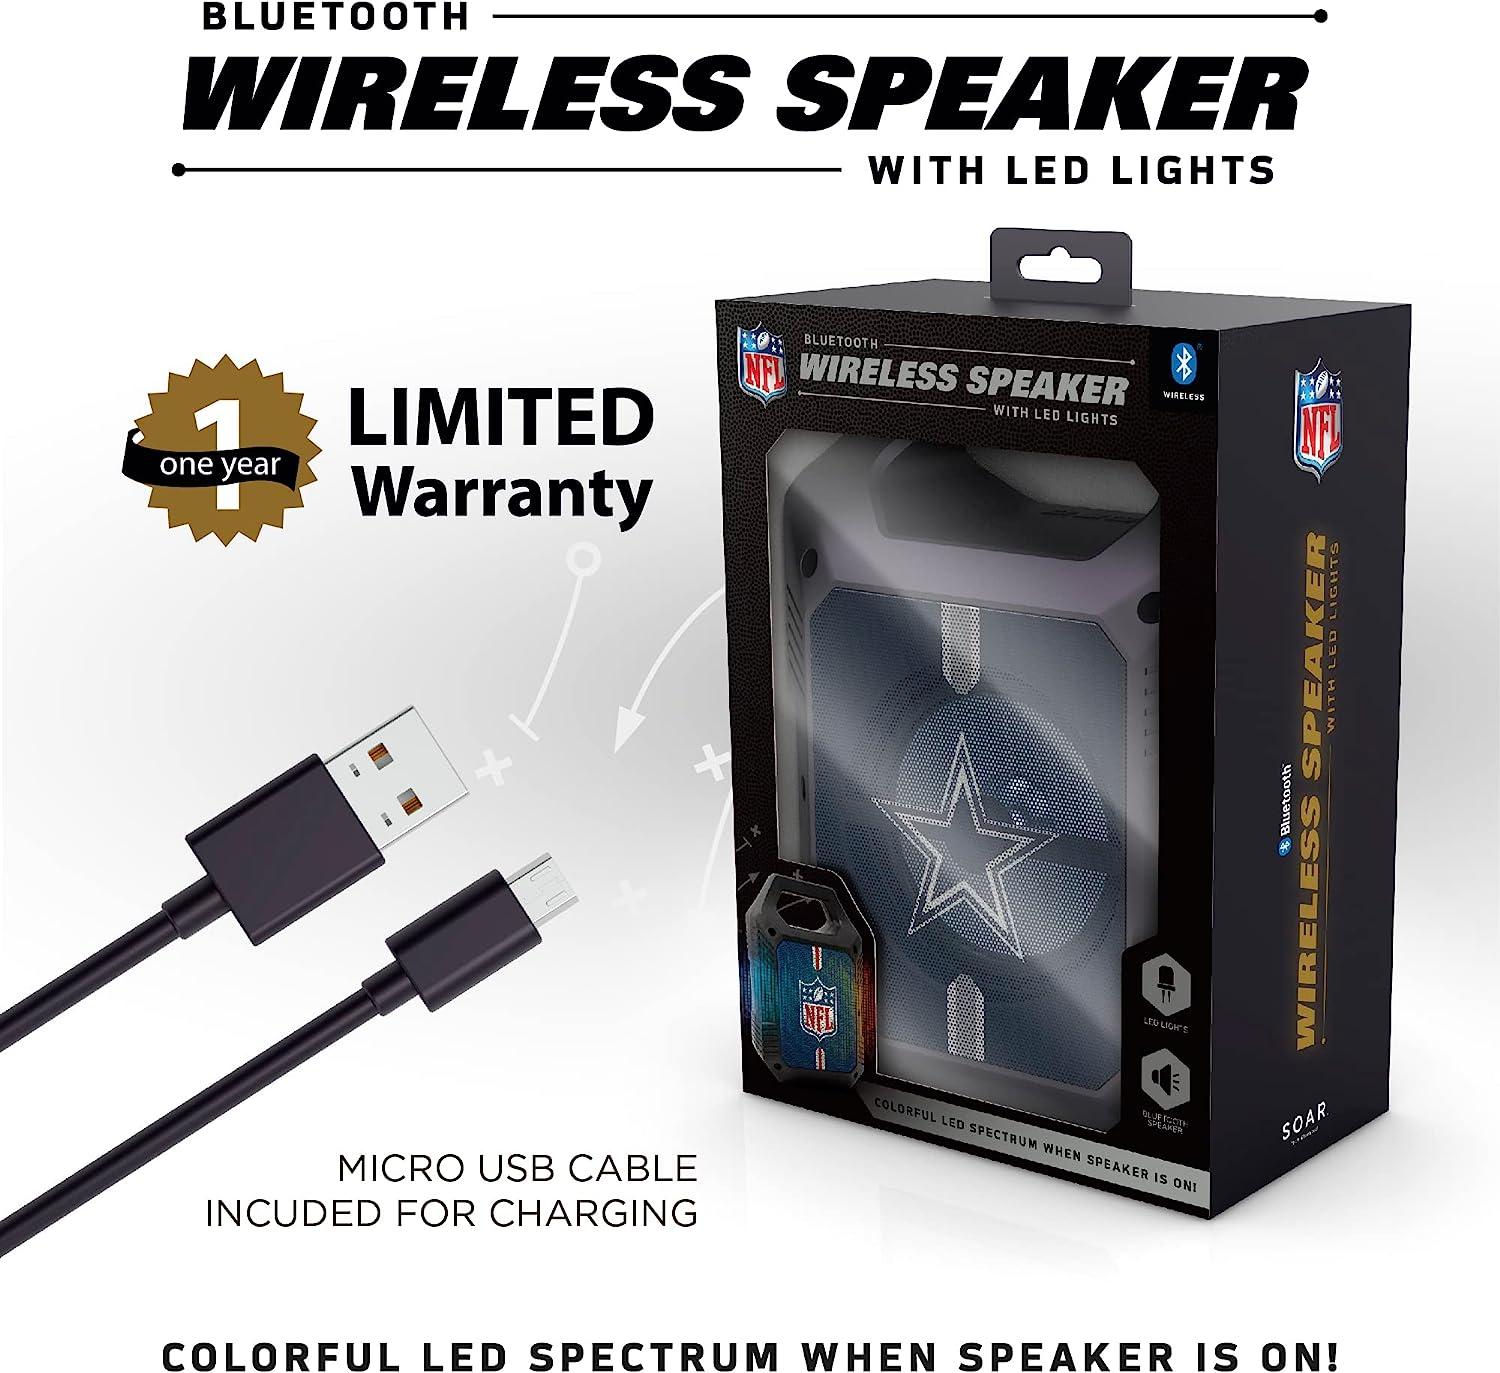 SOAR NCAA ShockBox XL LED Wireless Bluetooth Speaker